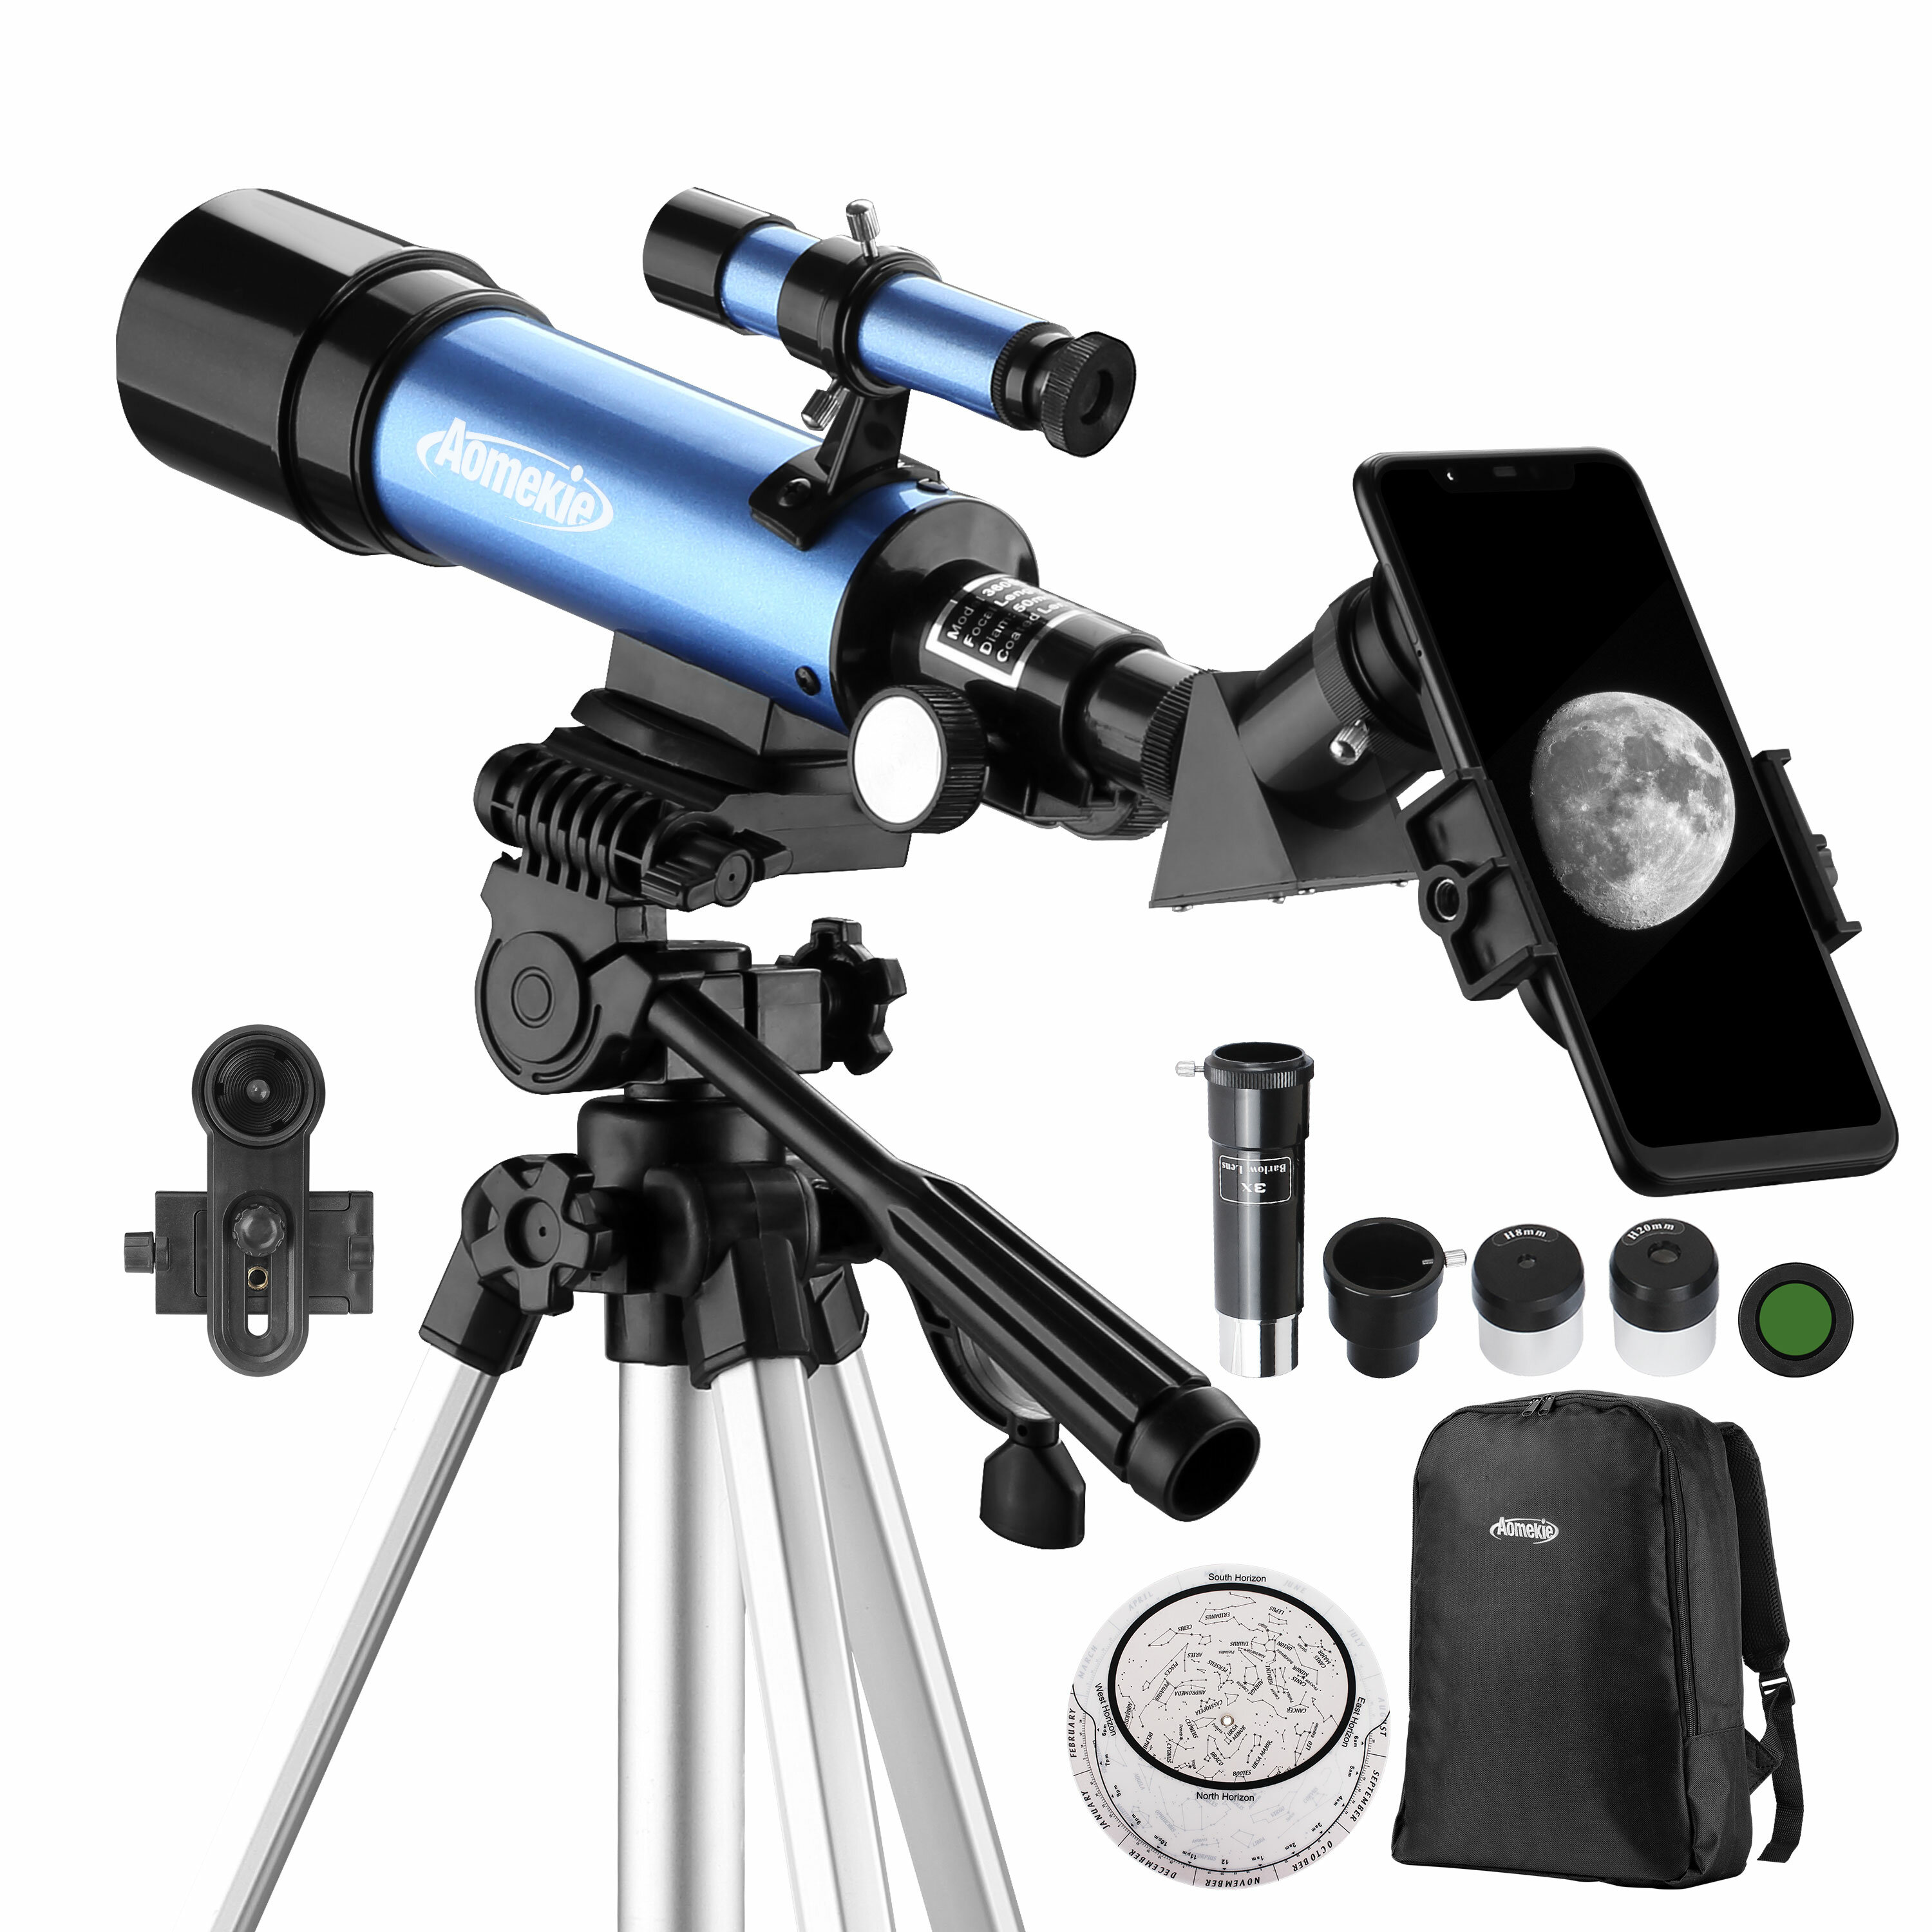 Télescope astronomique AOMEKIE 18X-135X avec ouverture de 50 mm, type réfracteur, avec adaptateur pour téléphone et trépied réglable pour les débutants en astronomie.